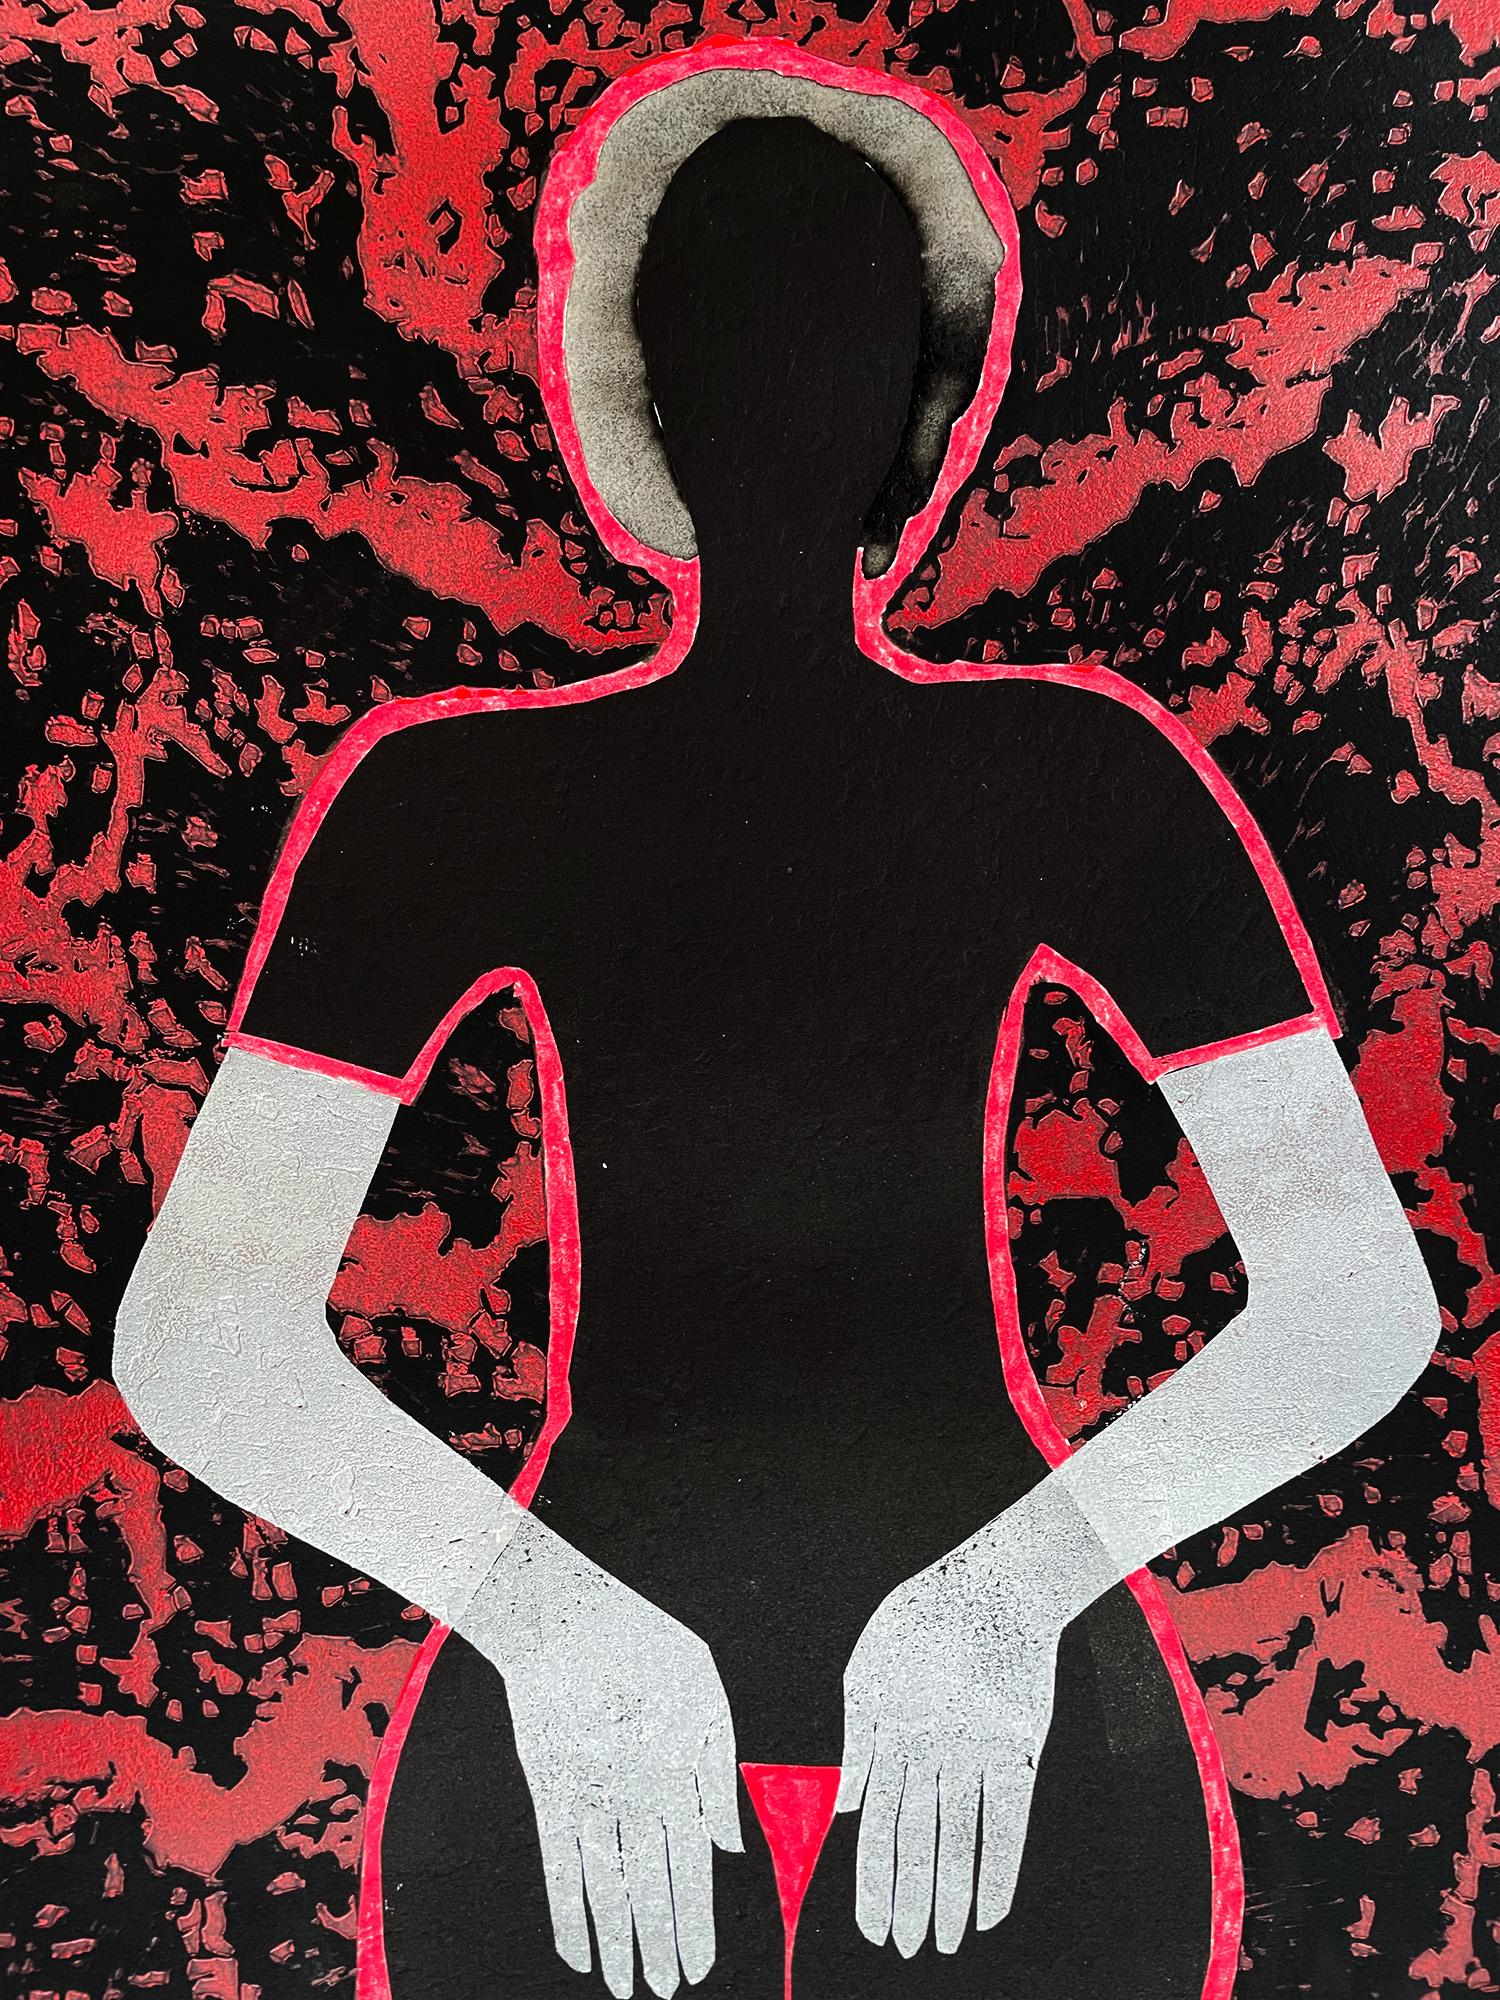 L'intimité de son corps en noir et rouge - Print de Jolanta Johnsson